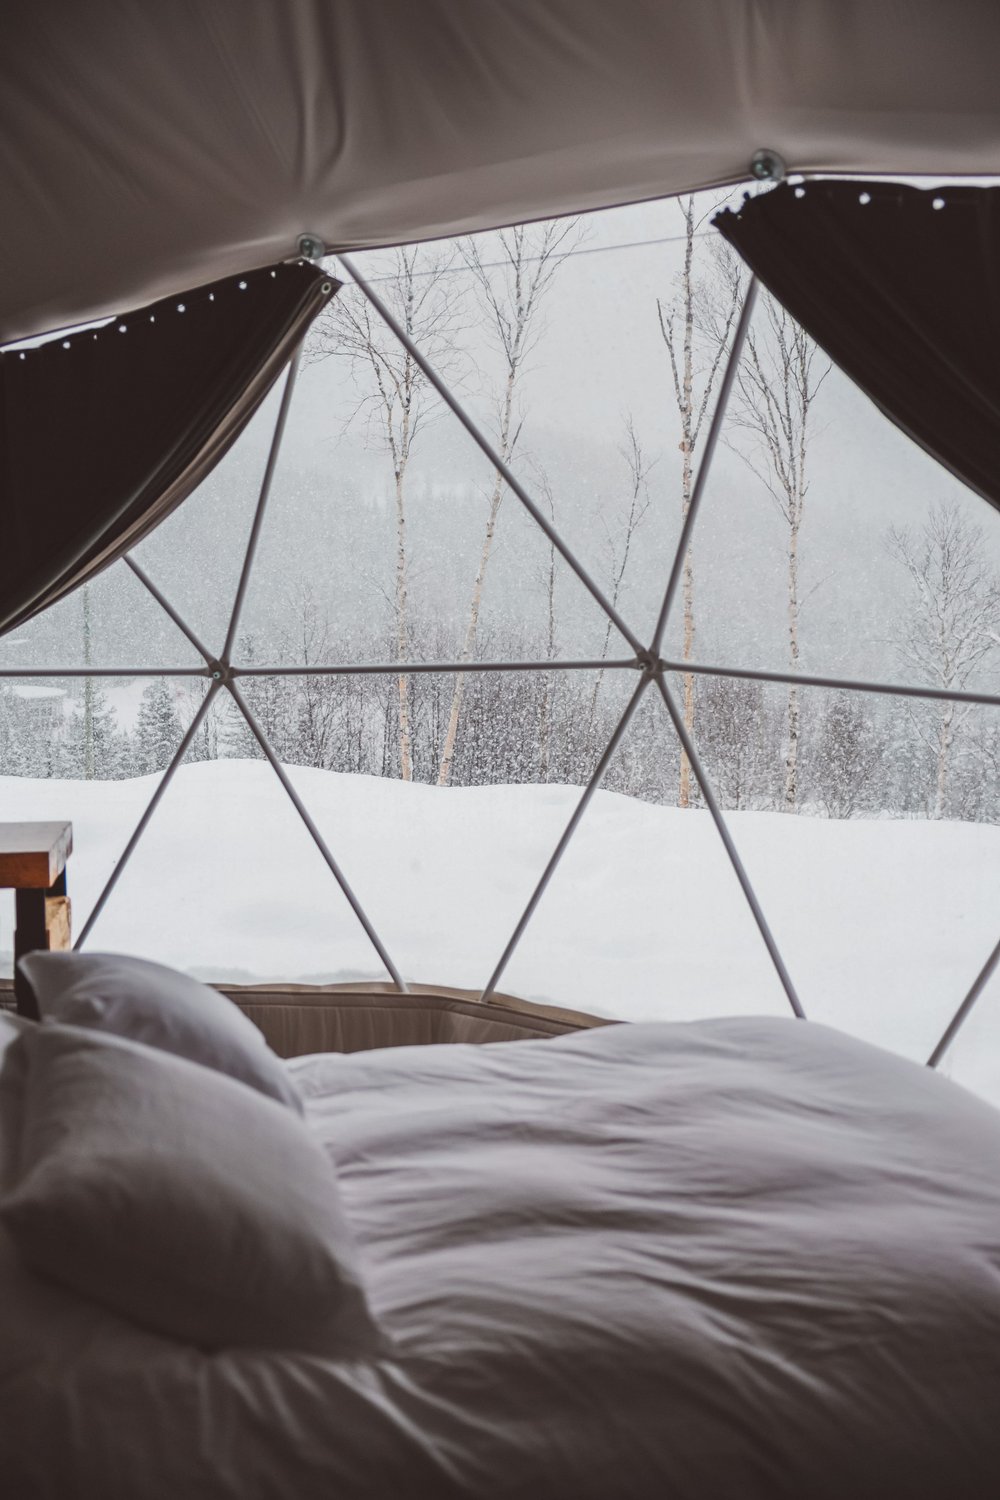 Our cute little bedroom in an igloo - Diamants de l'Éternel - Saint-David-de-Falardeau - Saguenay-Lac-St-Jean - Quebec - Canada